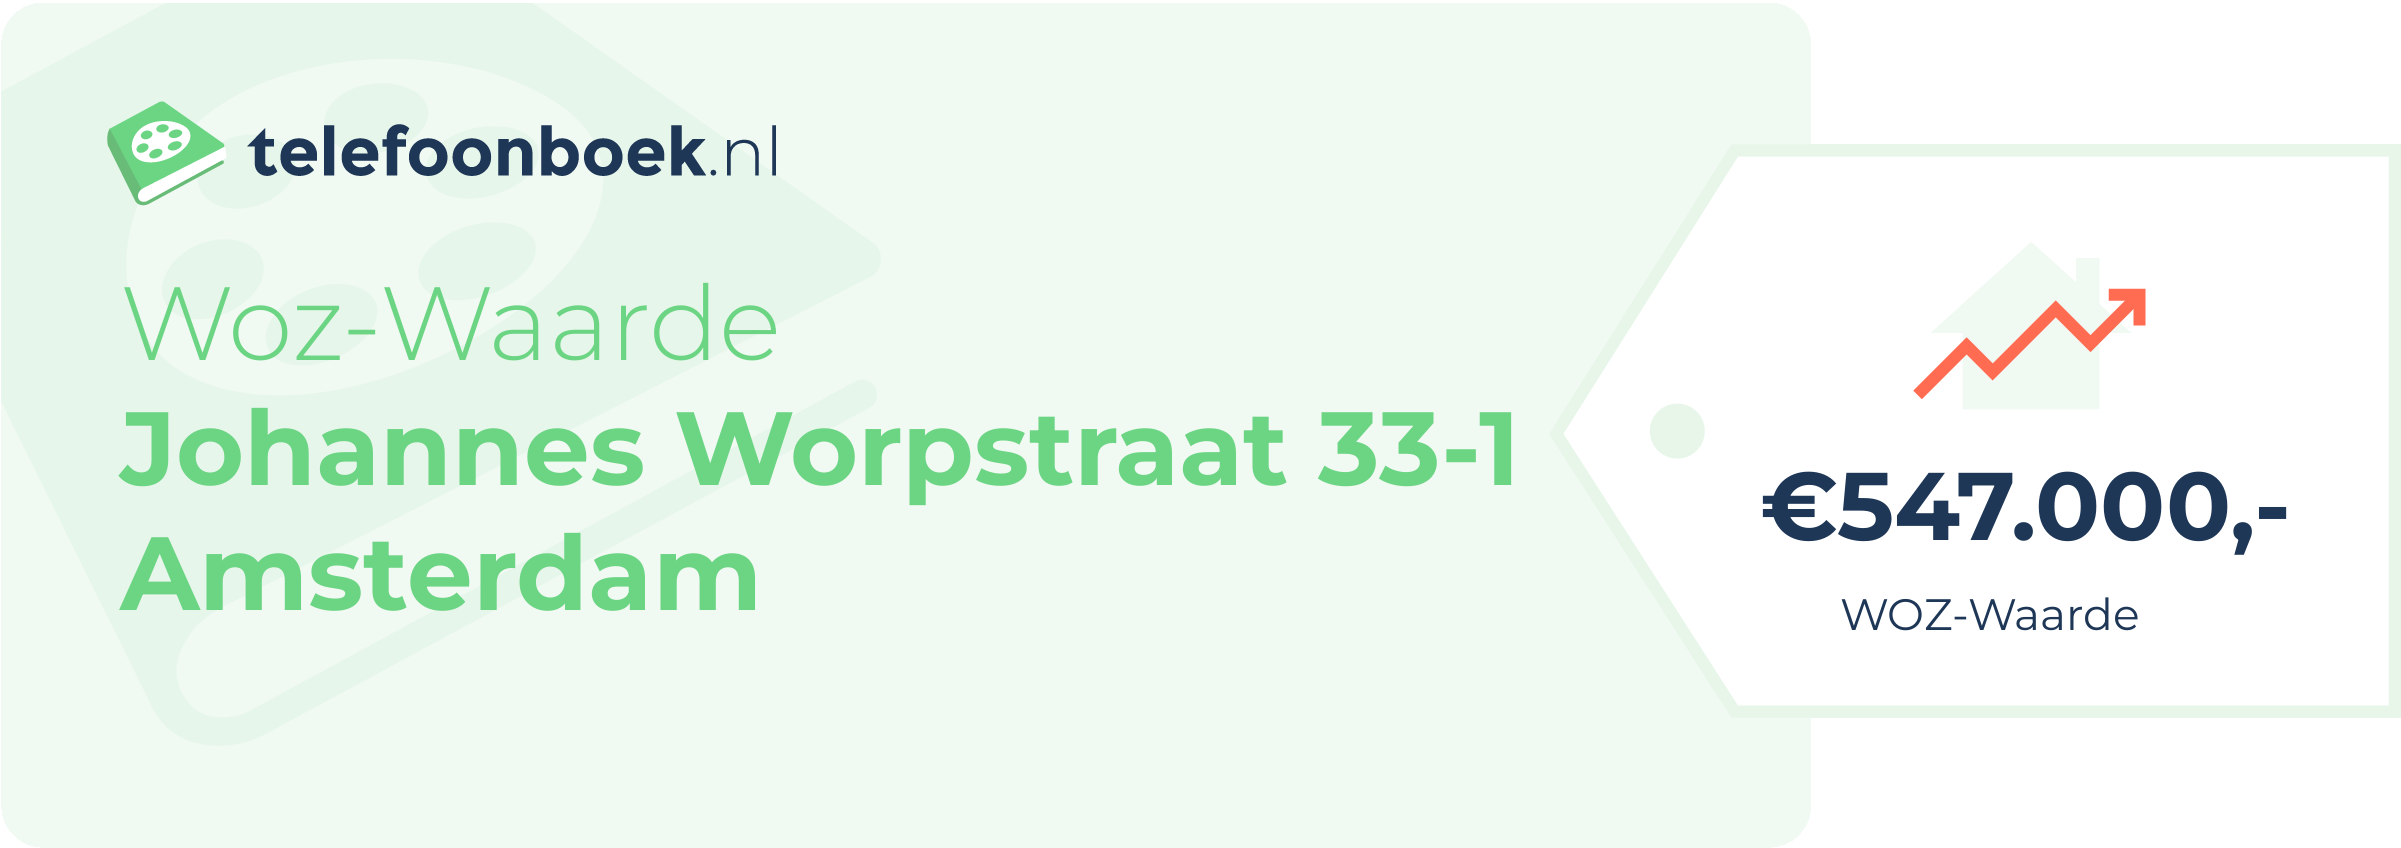 WOZ-waarde Johannes Worpstraat 33-1 Amsterdam